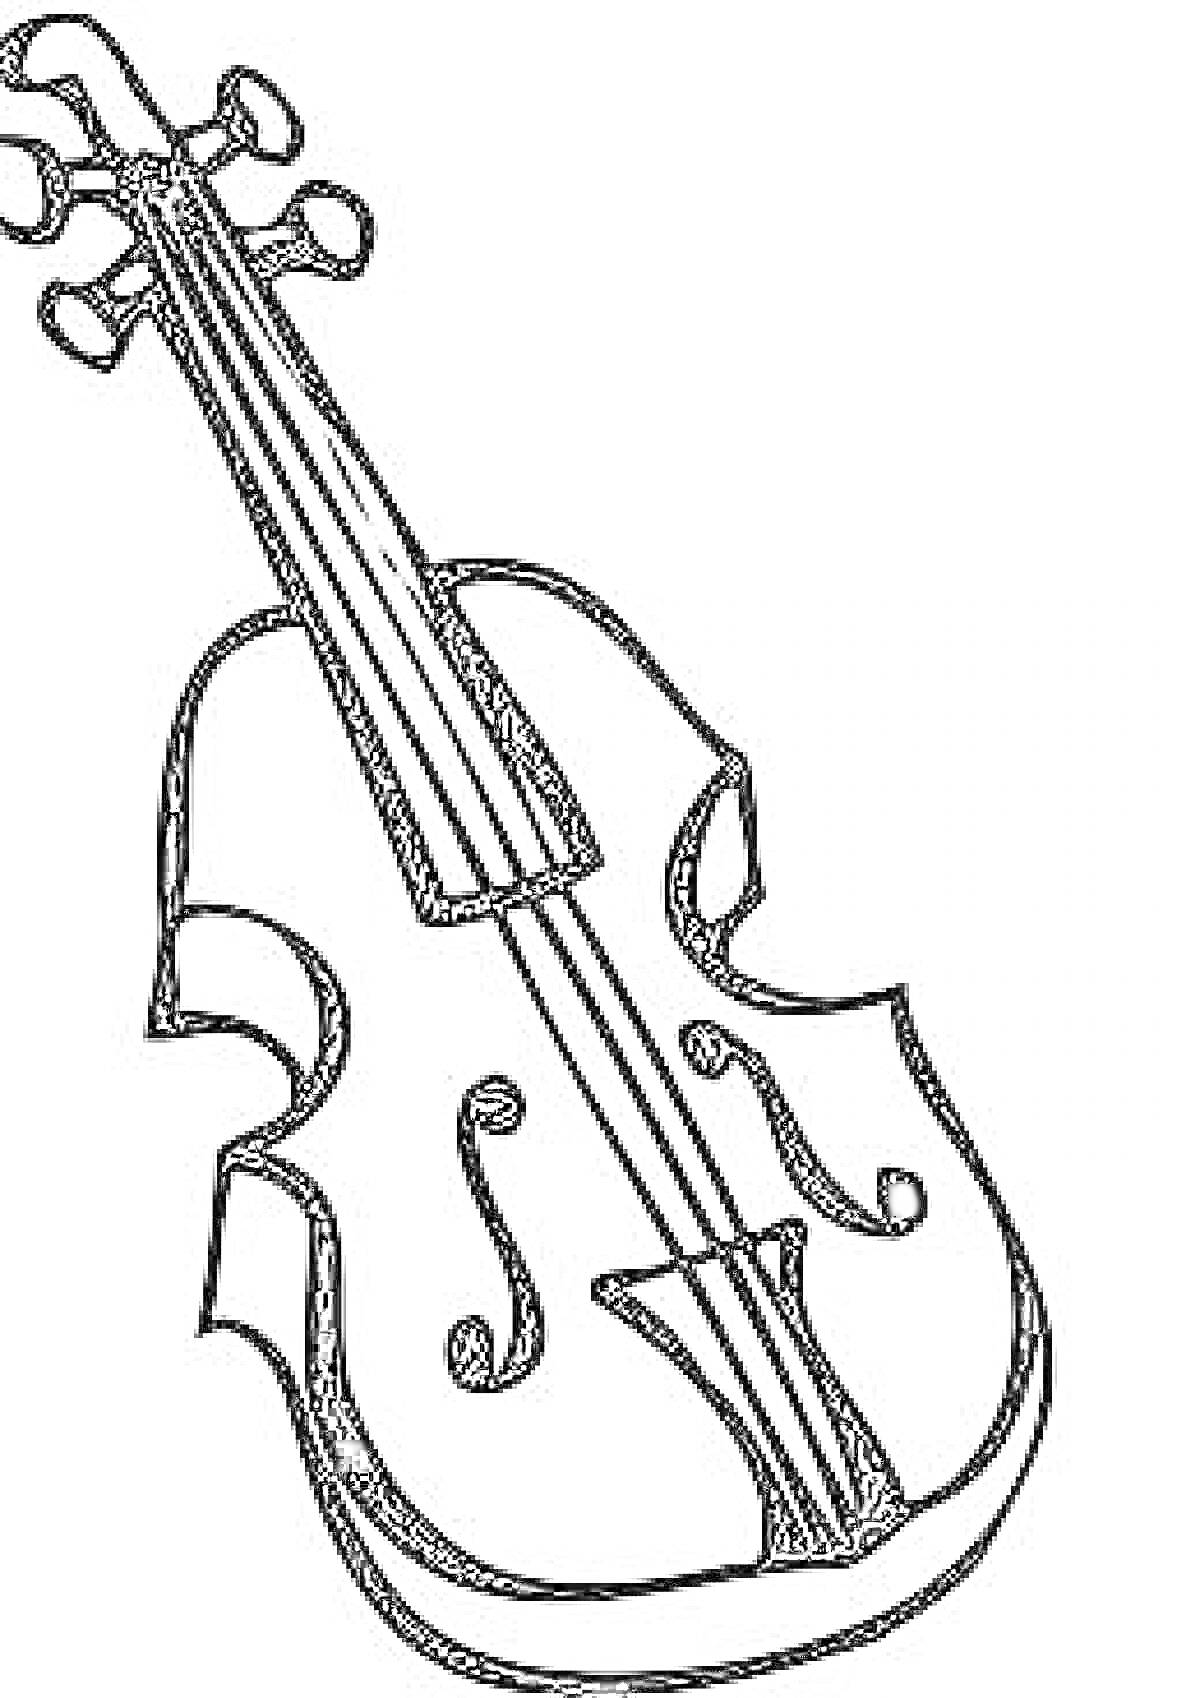 Раскраска Скрипка, изображение контурного вида скрипки с колками, подставкой, струнами и корпусом